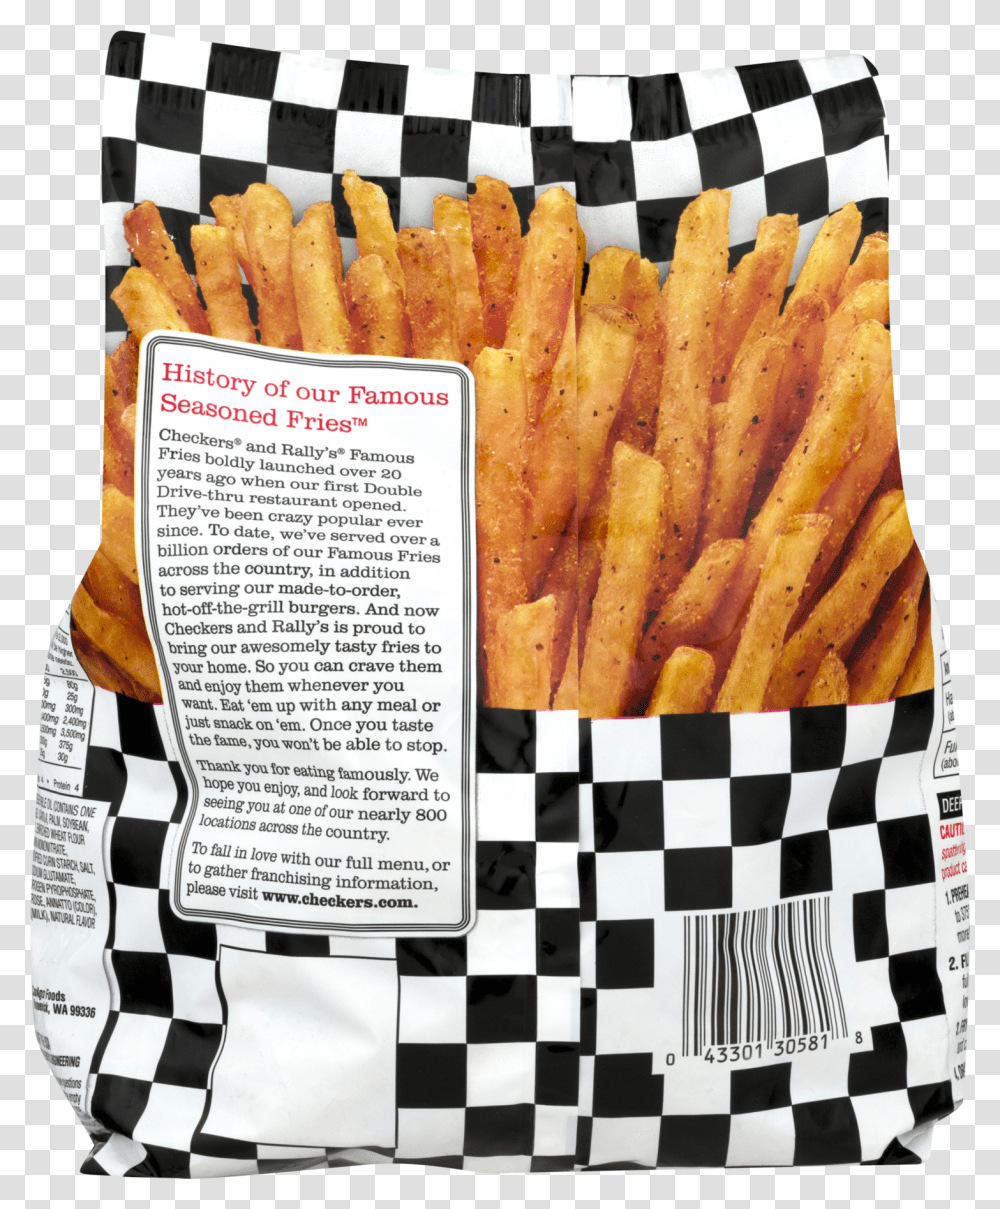 Checkers Frozen Fries Calories Transparent Png